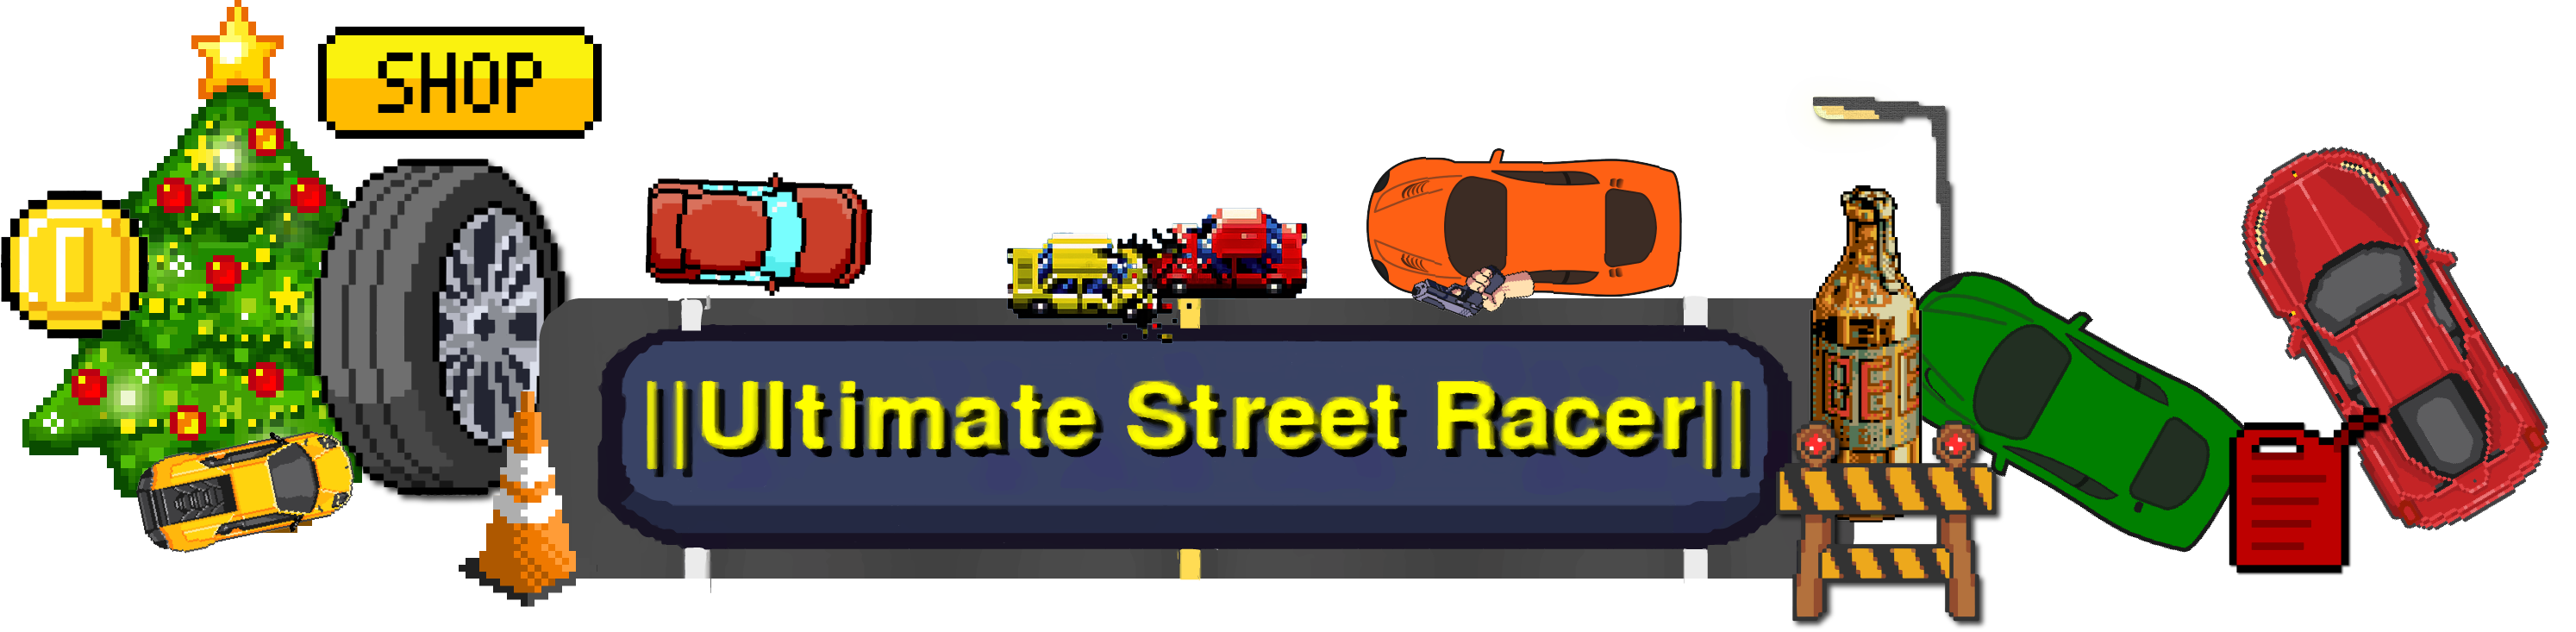 Ultimate Street Racer Full Version